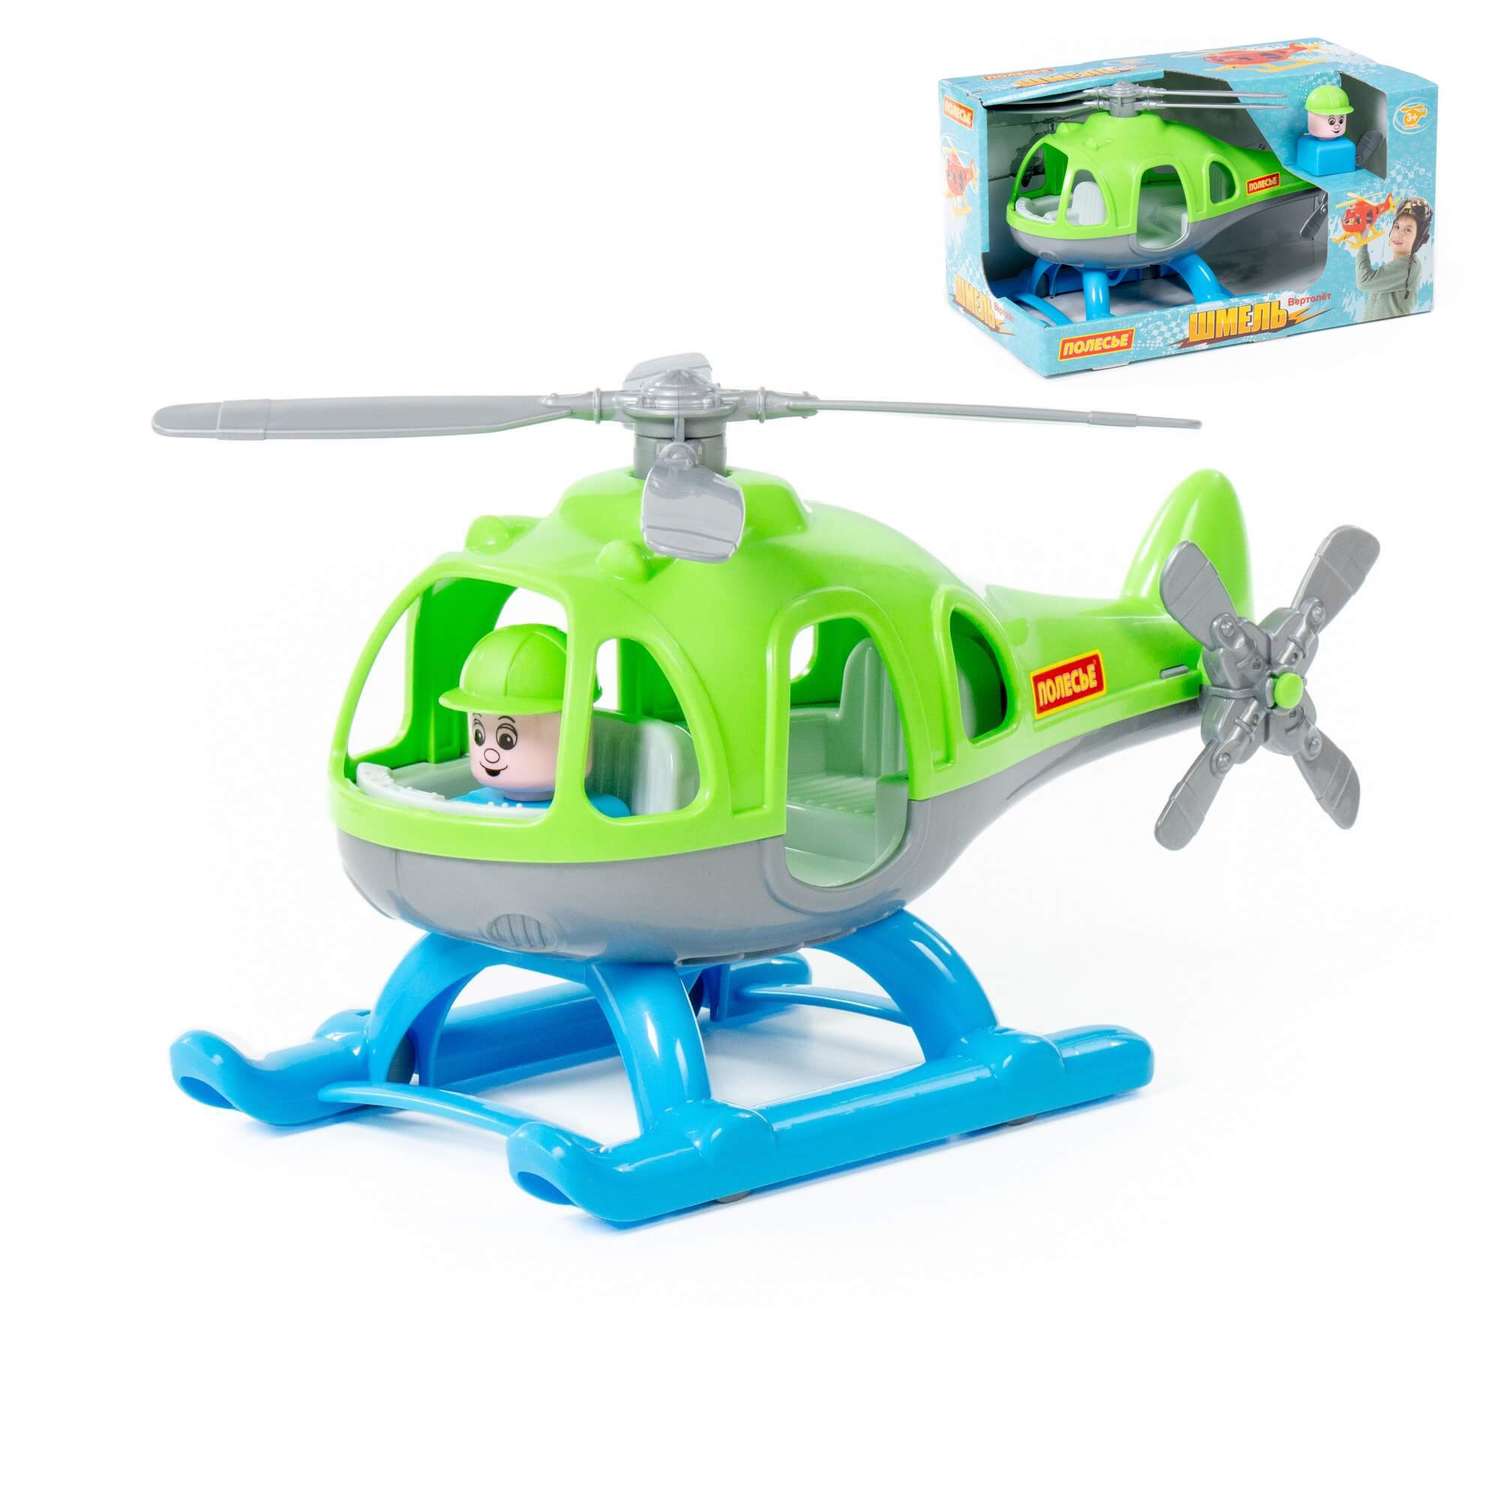 Вертолет Полесье Шмель зелёно-голубой 67654 - фото 2